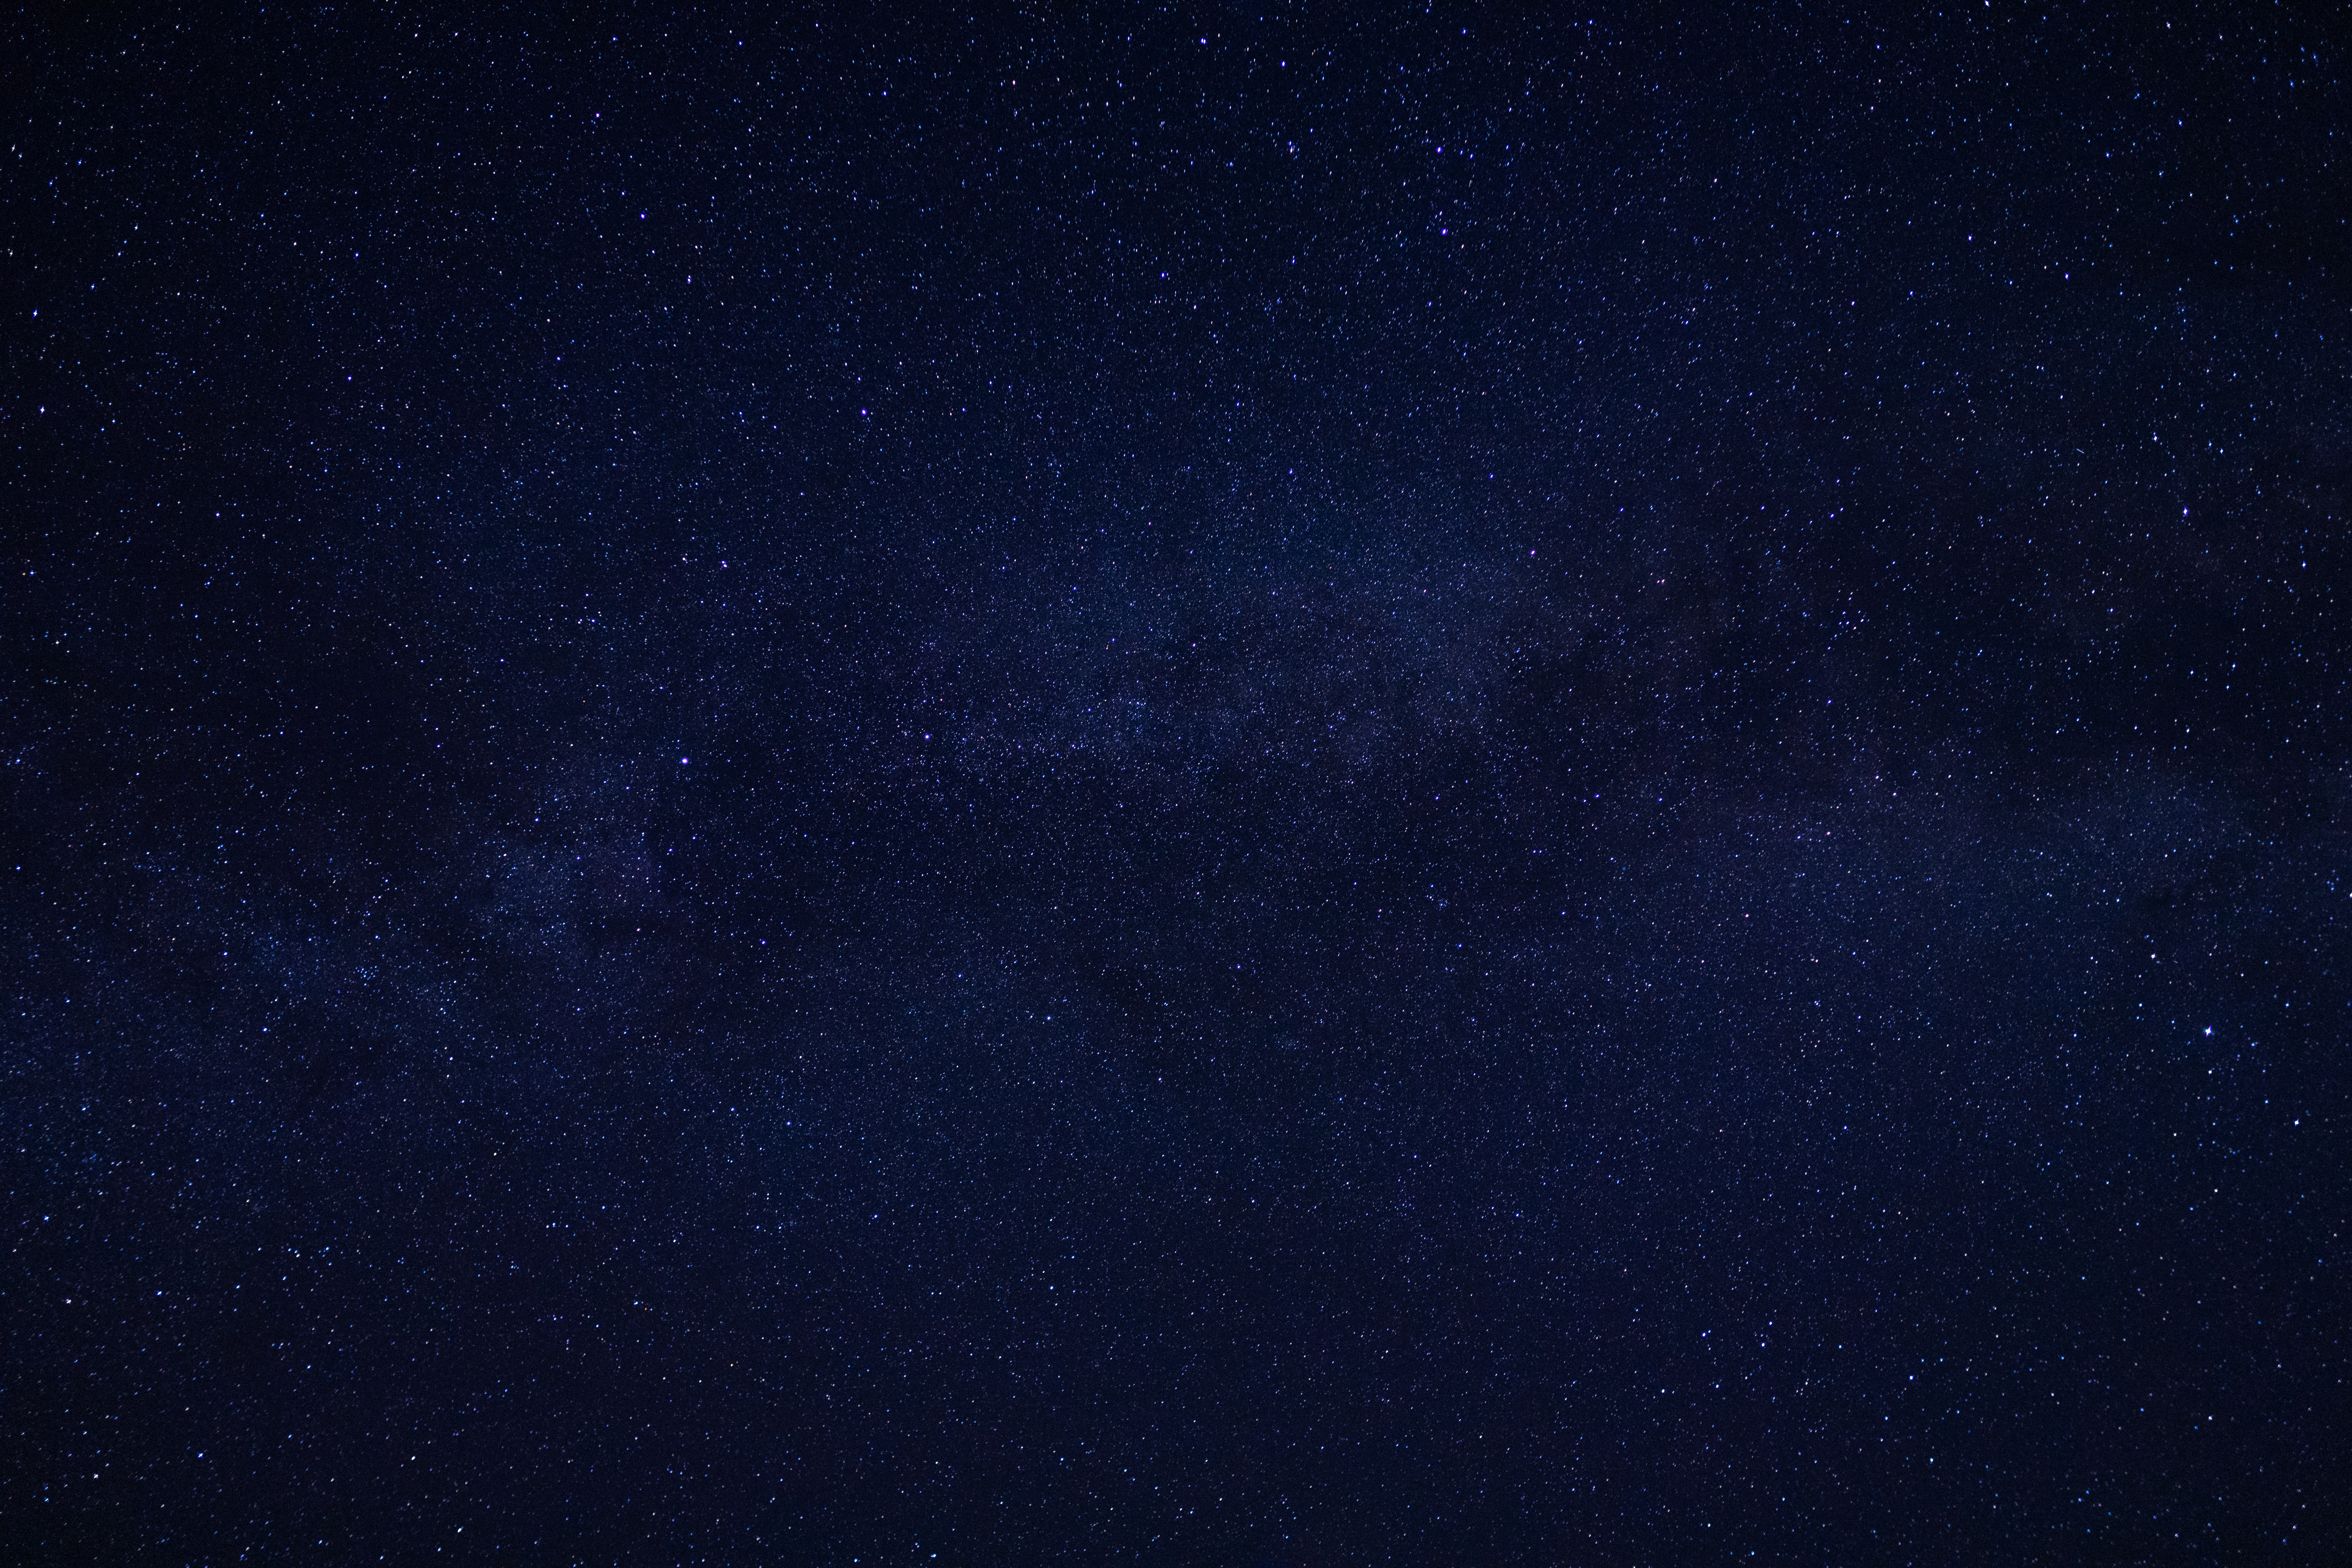 Hình nền sao trời đêm 6000x4000 sẽ đưa bạn đến một thế giới mà bạn chưa từng trải nghiệm. Với những vệt sáng tinh tú và bầu trời đầy ngôi sao, bạn sẽ cảm thấy như một người khám phá cuộc sống đích thực. Hãy thư giãn và đắm mình trong không gian bao la của thiên nhiên.